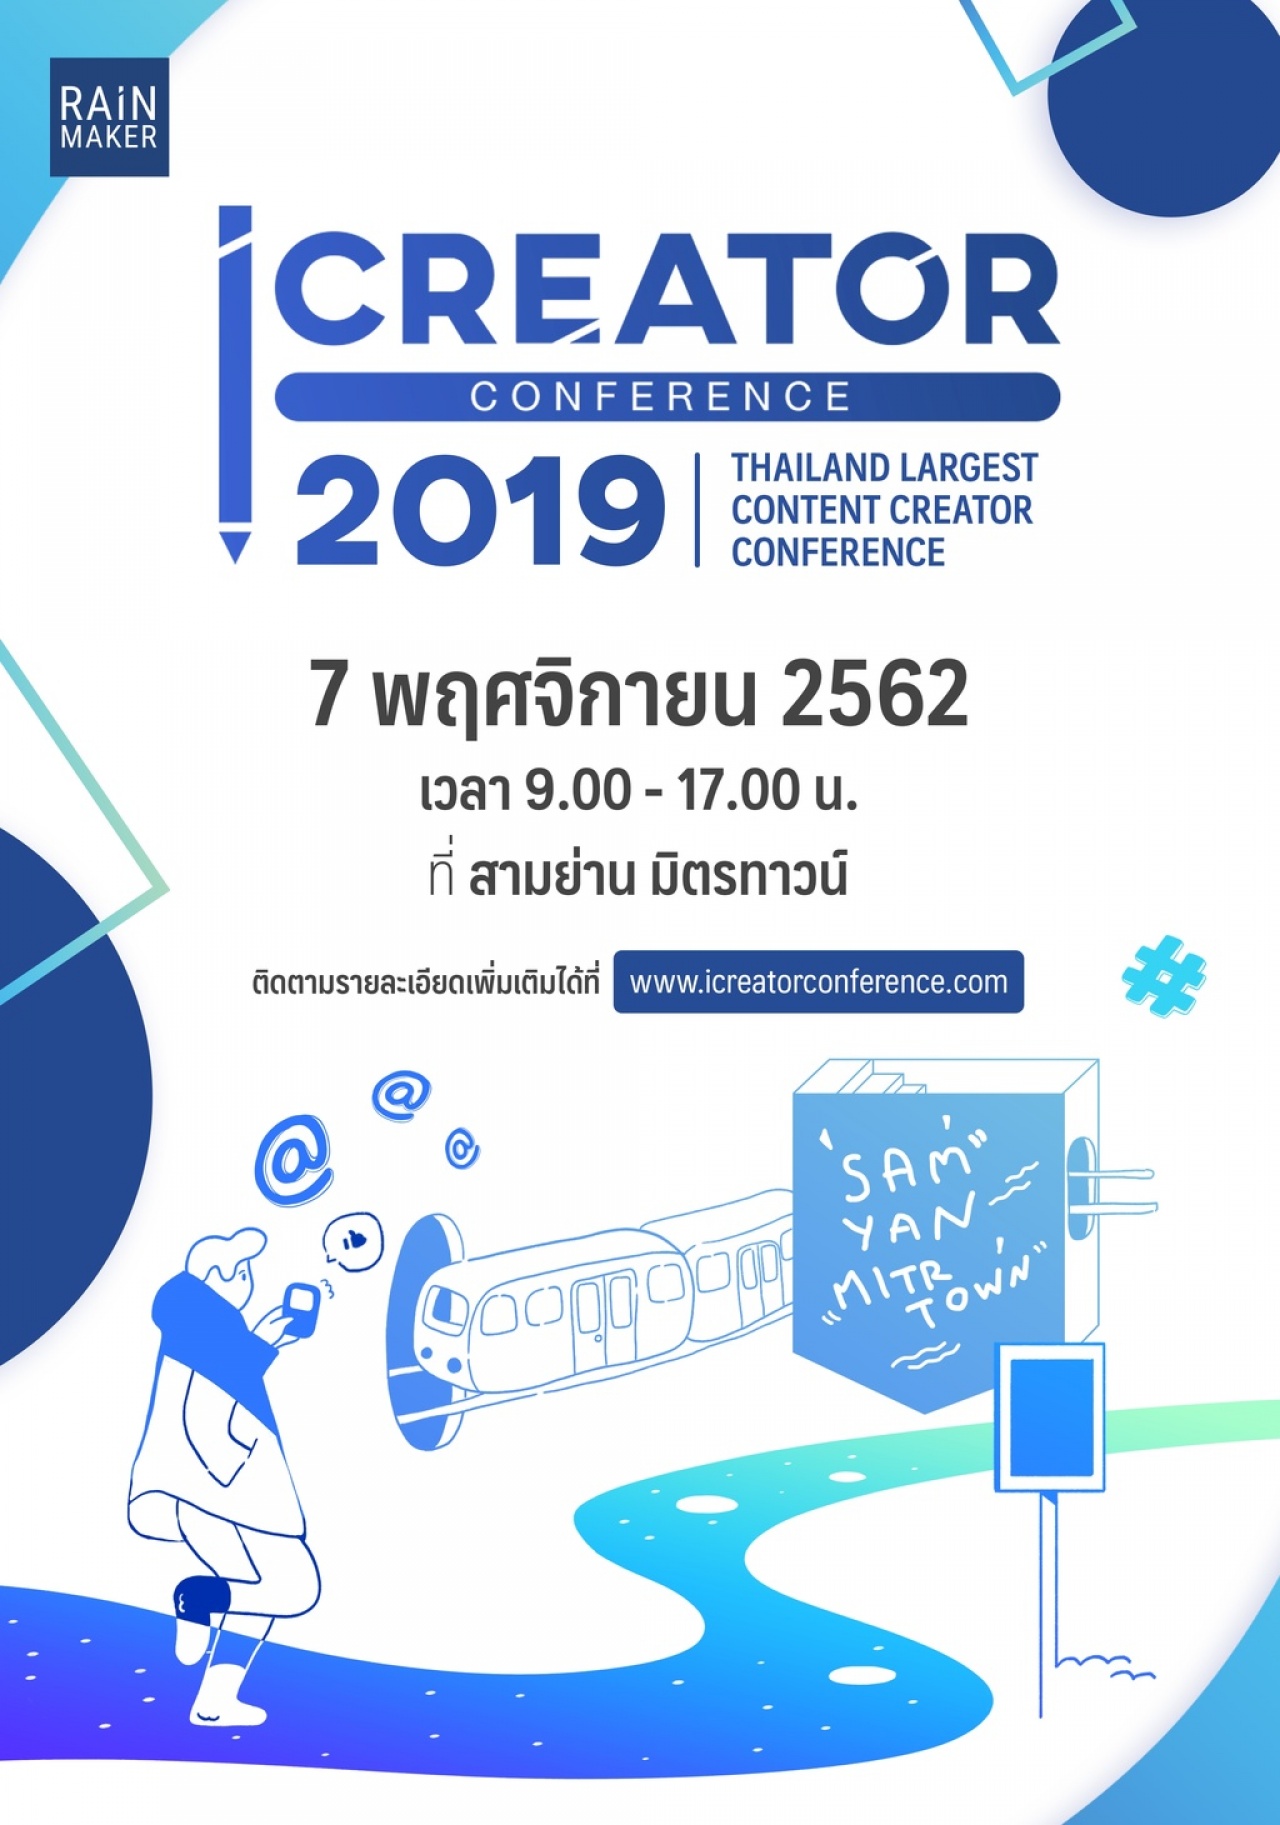 iCreator Conference 2019 งานสัมมนาครั้งใหญ่ของ Content Creator 